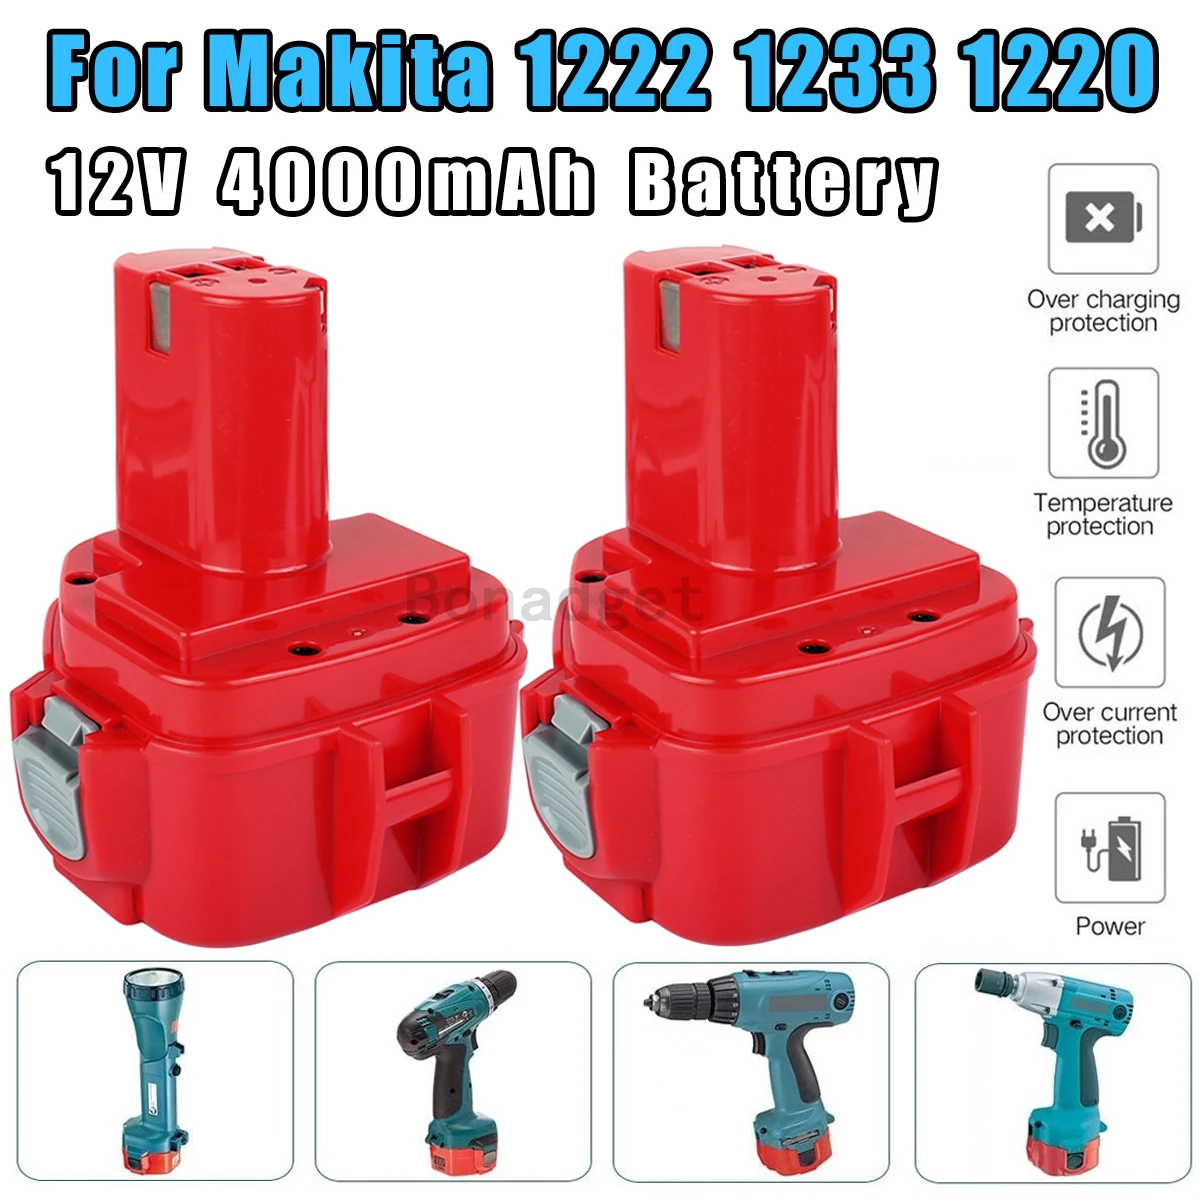 1210 Makita® 12V Battery Rebuild Service